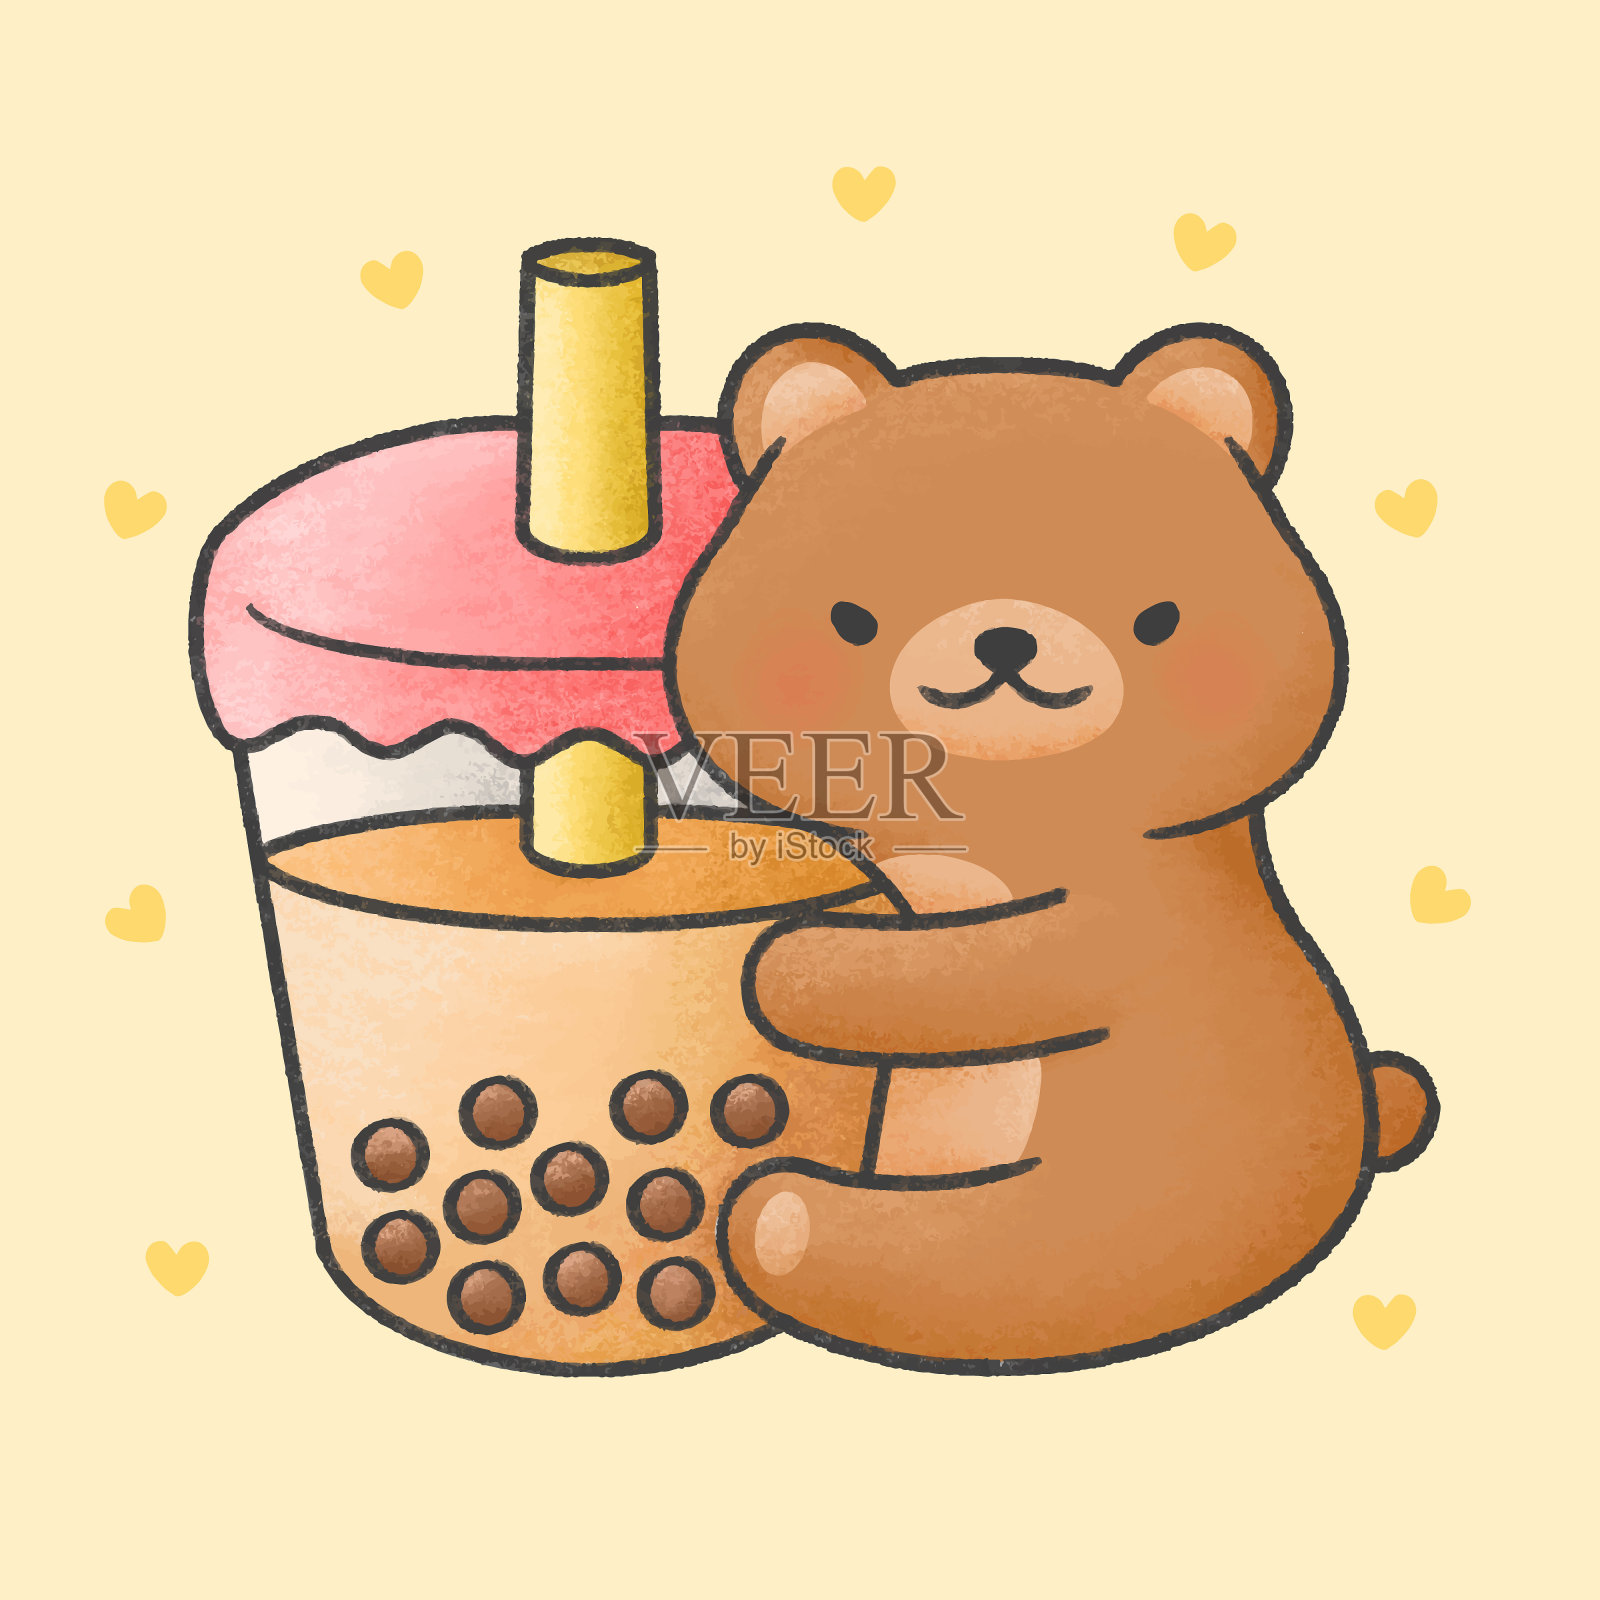 可爱的熊抱泡泡奶茶新鲜饮料卡通手绘风格插画图片素材